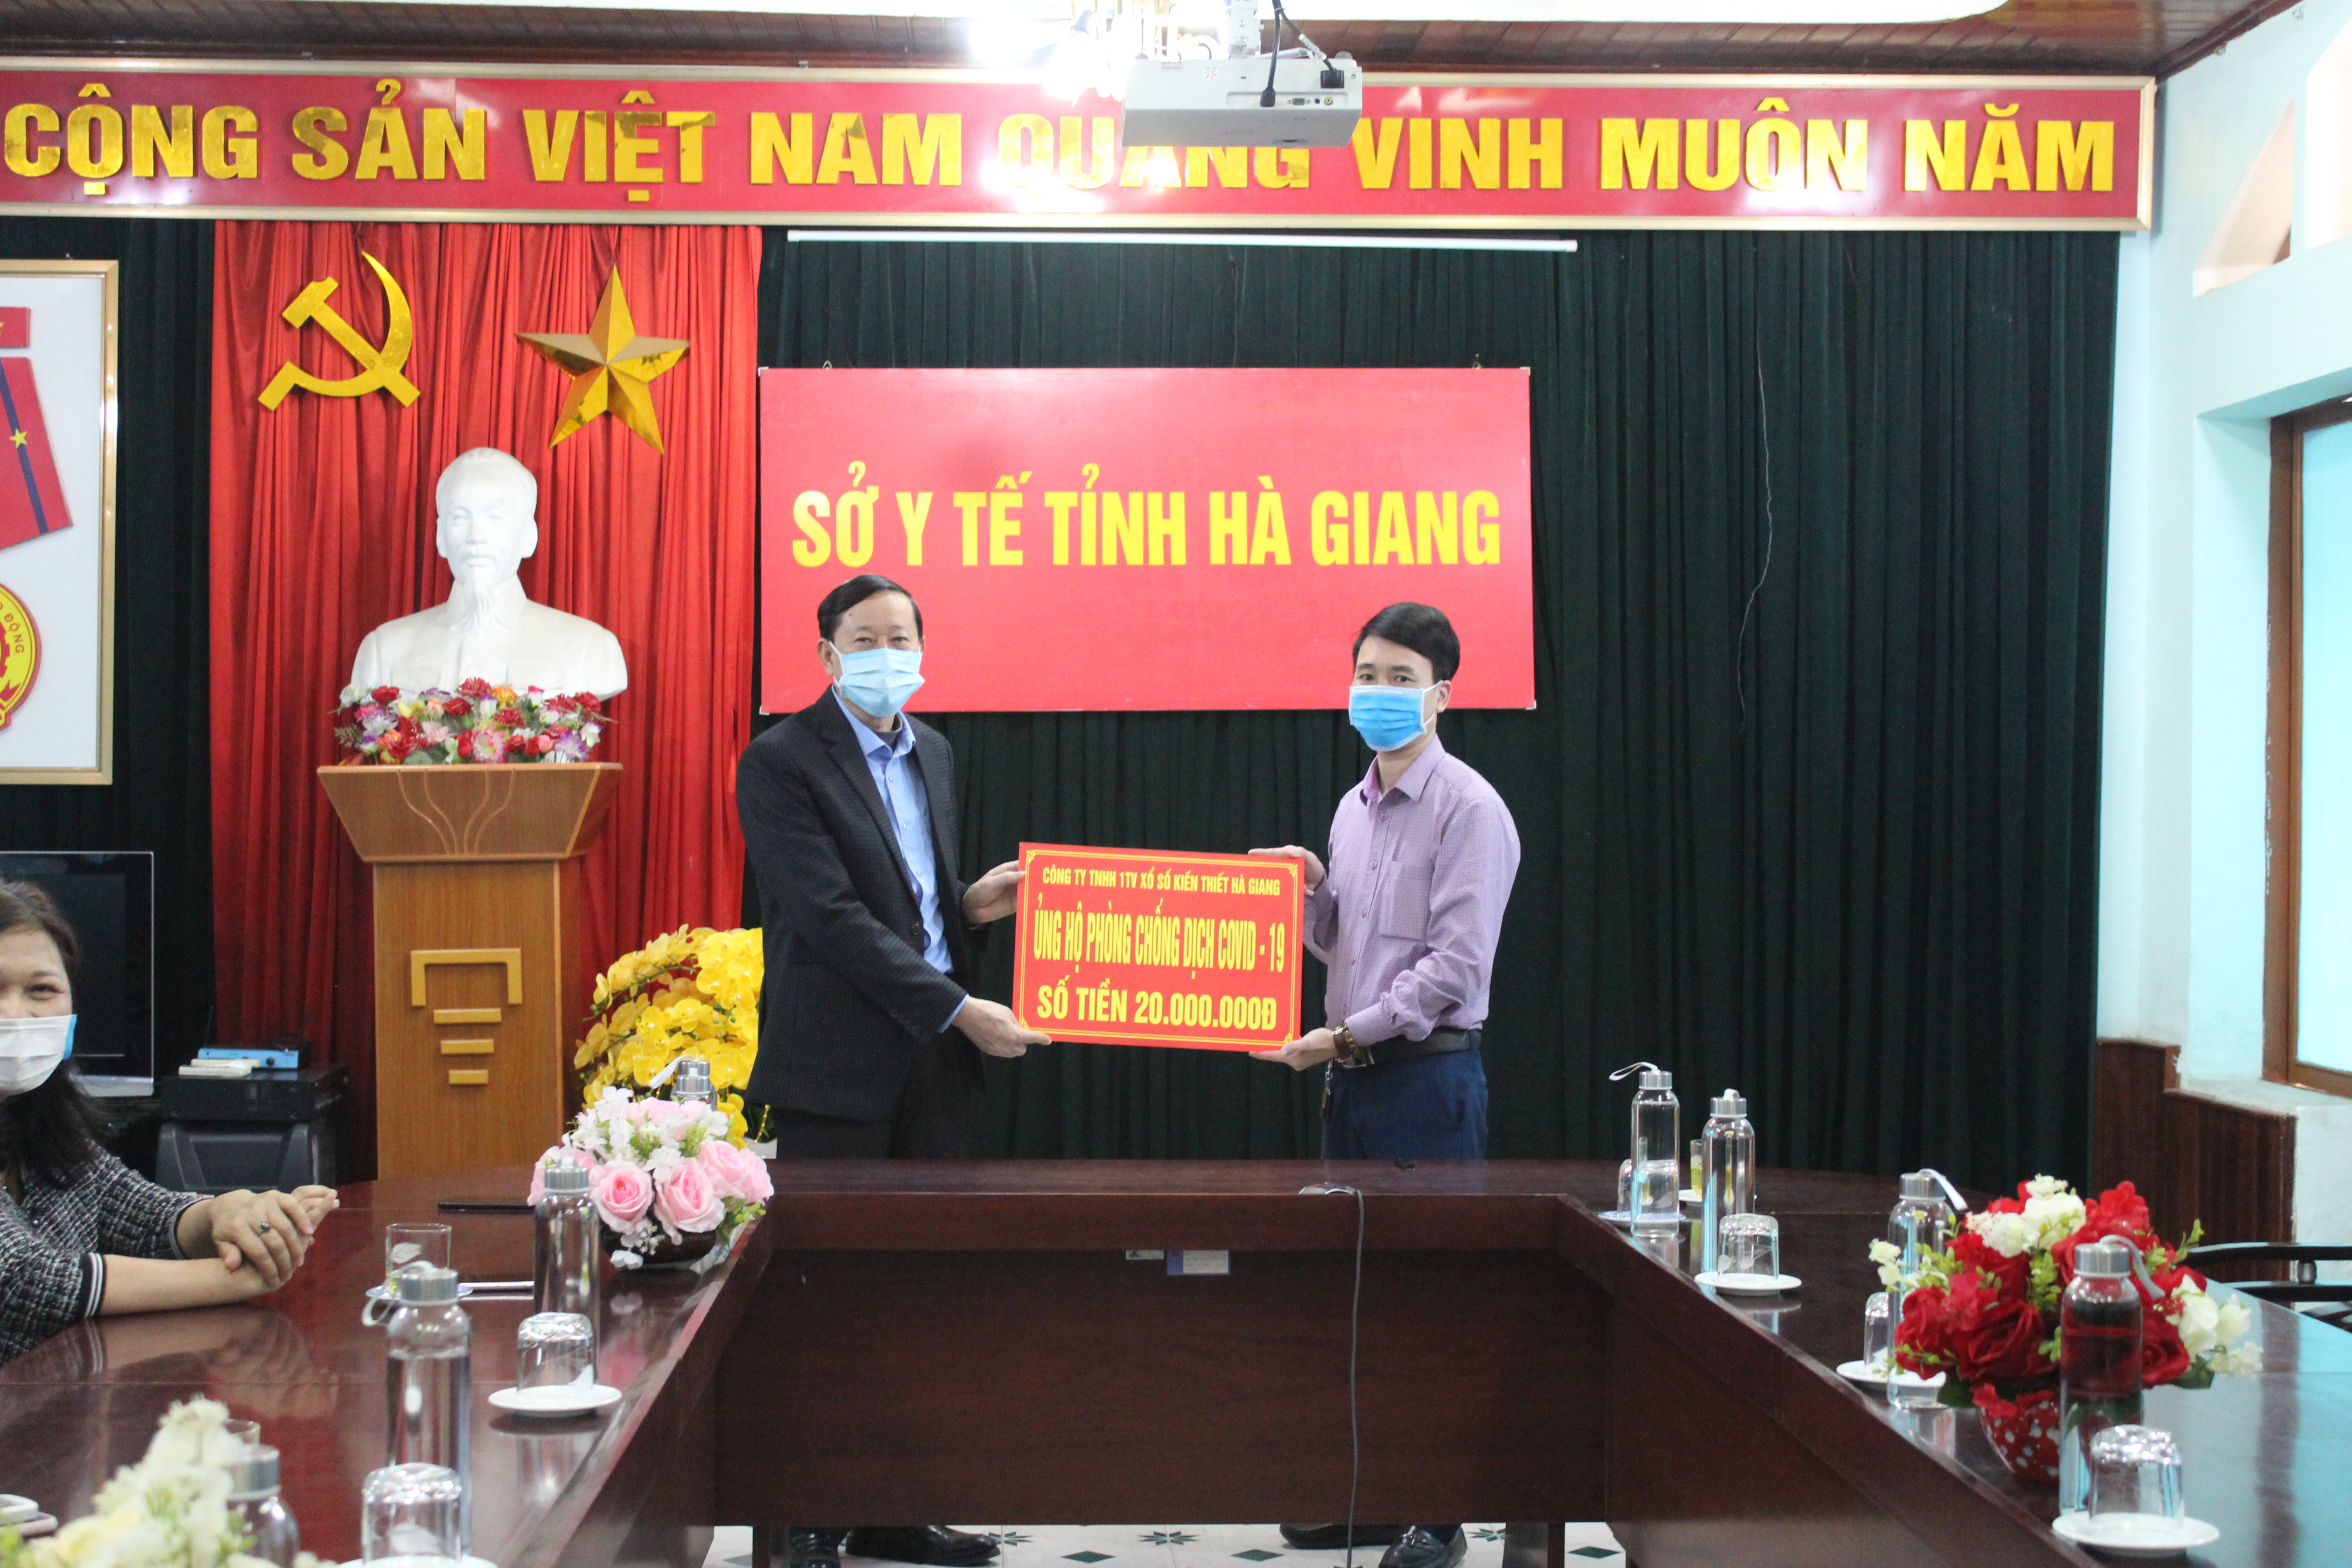 Công ty TNHH MTV Xổ số kiến thiết Hà Giang ủng hộ 20 triệu đồng cho Ngành Y tế trong phòng chống dịch COVID-19